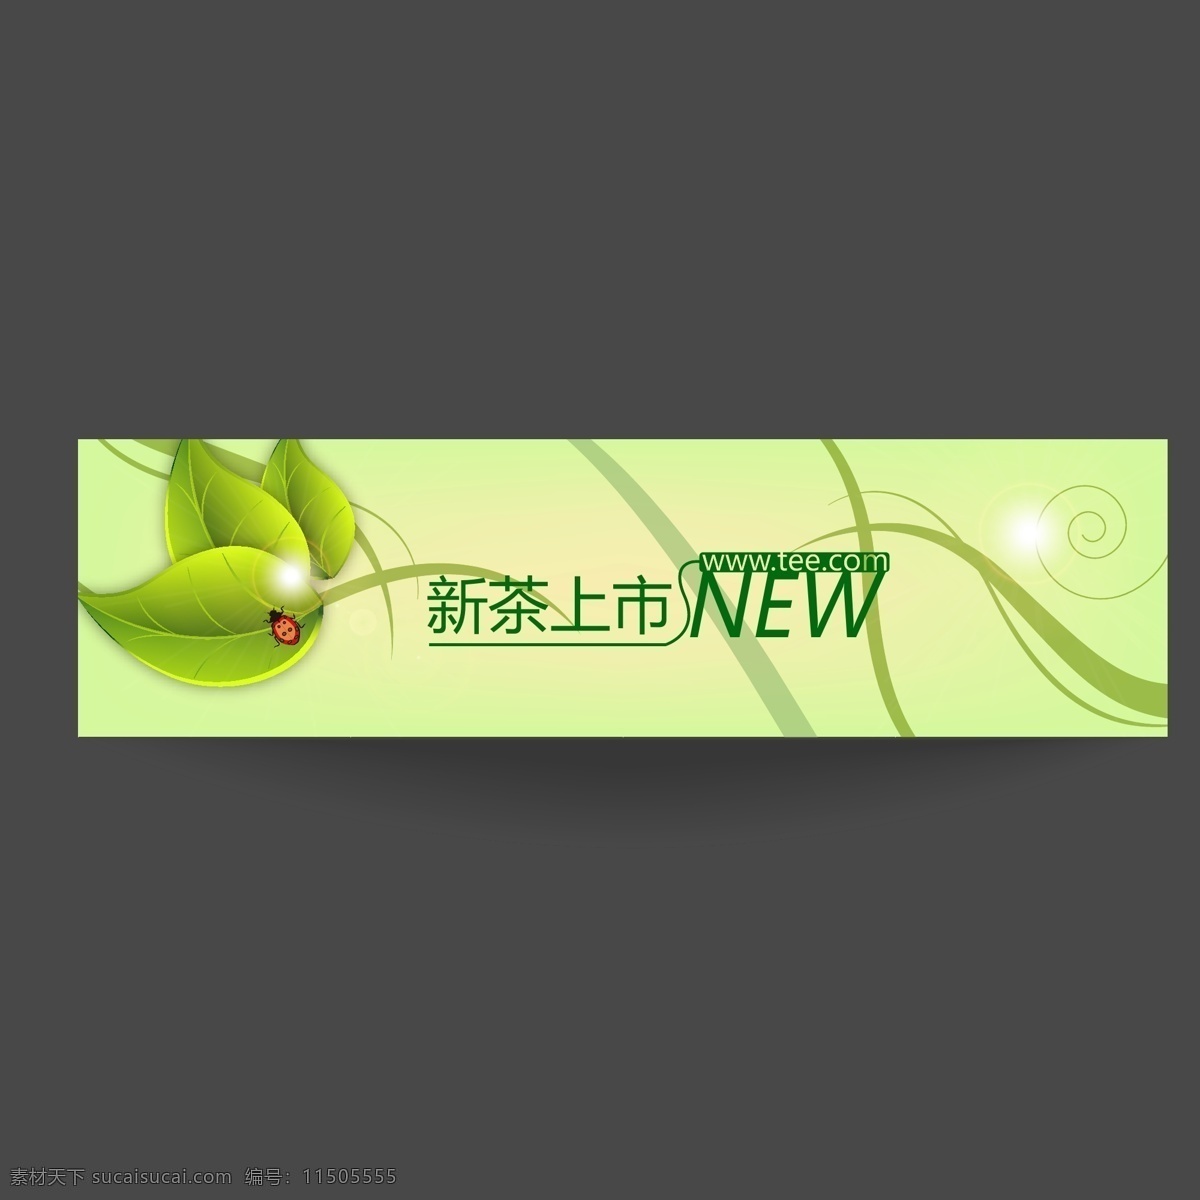 绿茶 网页 标头 清新 树叶 网站 bananer 原创设计 原创网页设计